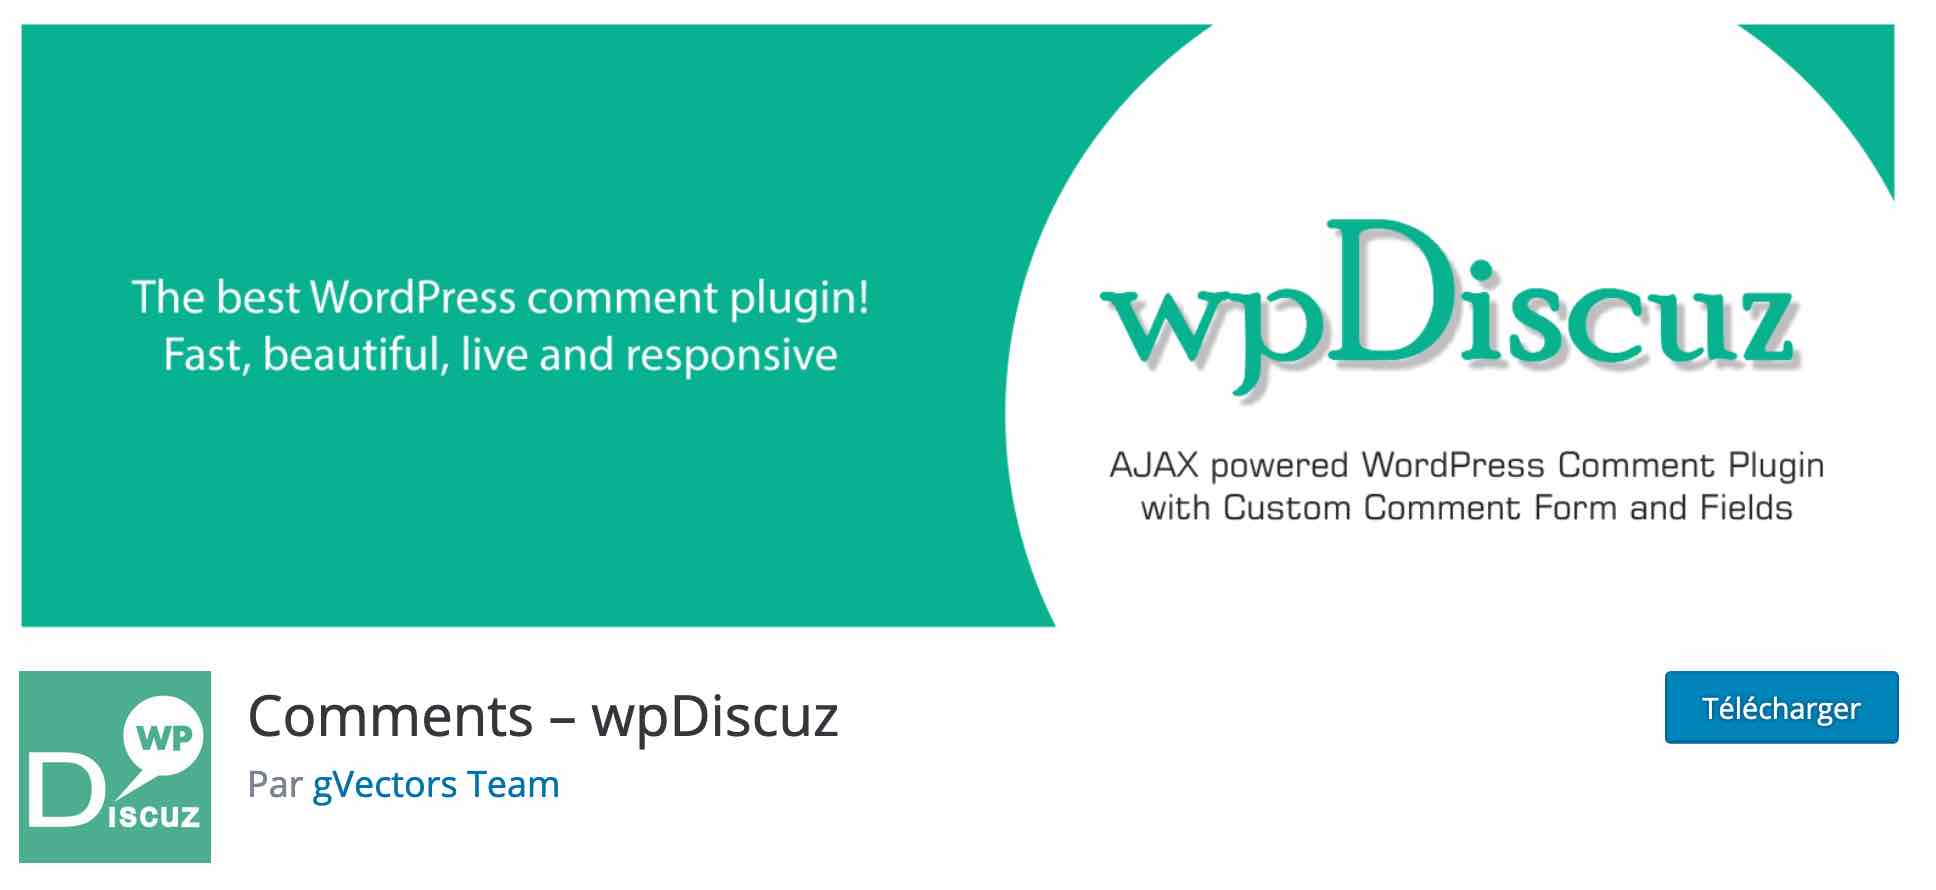 Comments - wpDiscuz est un plugin de commentaire sur WordPress